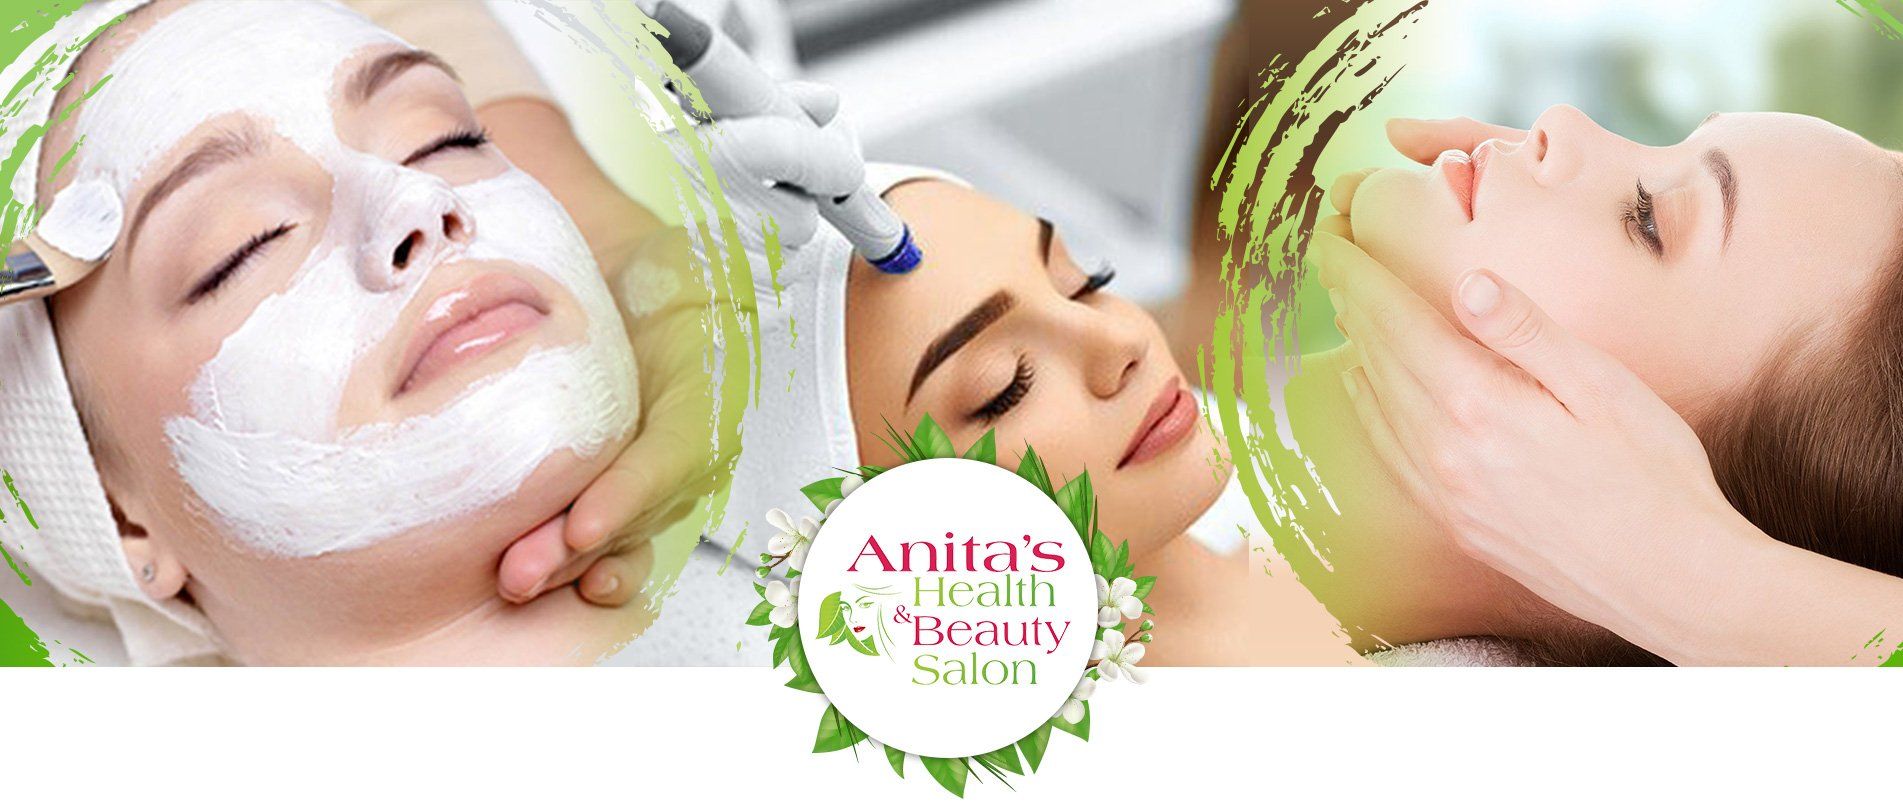 Anitas Health and Beauty